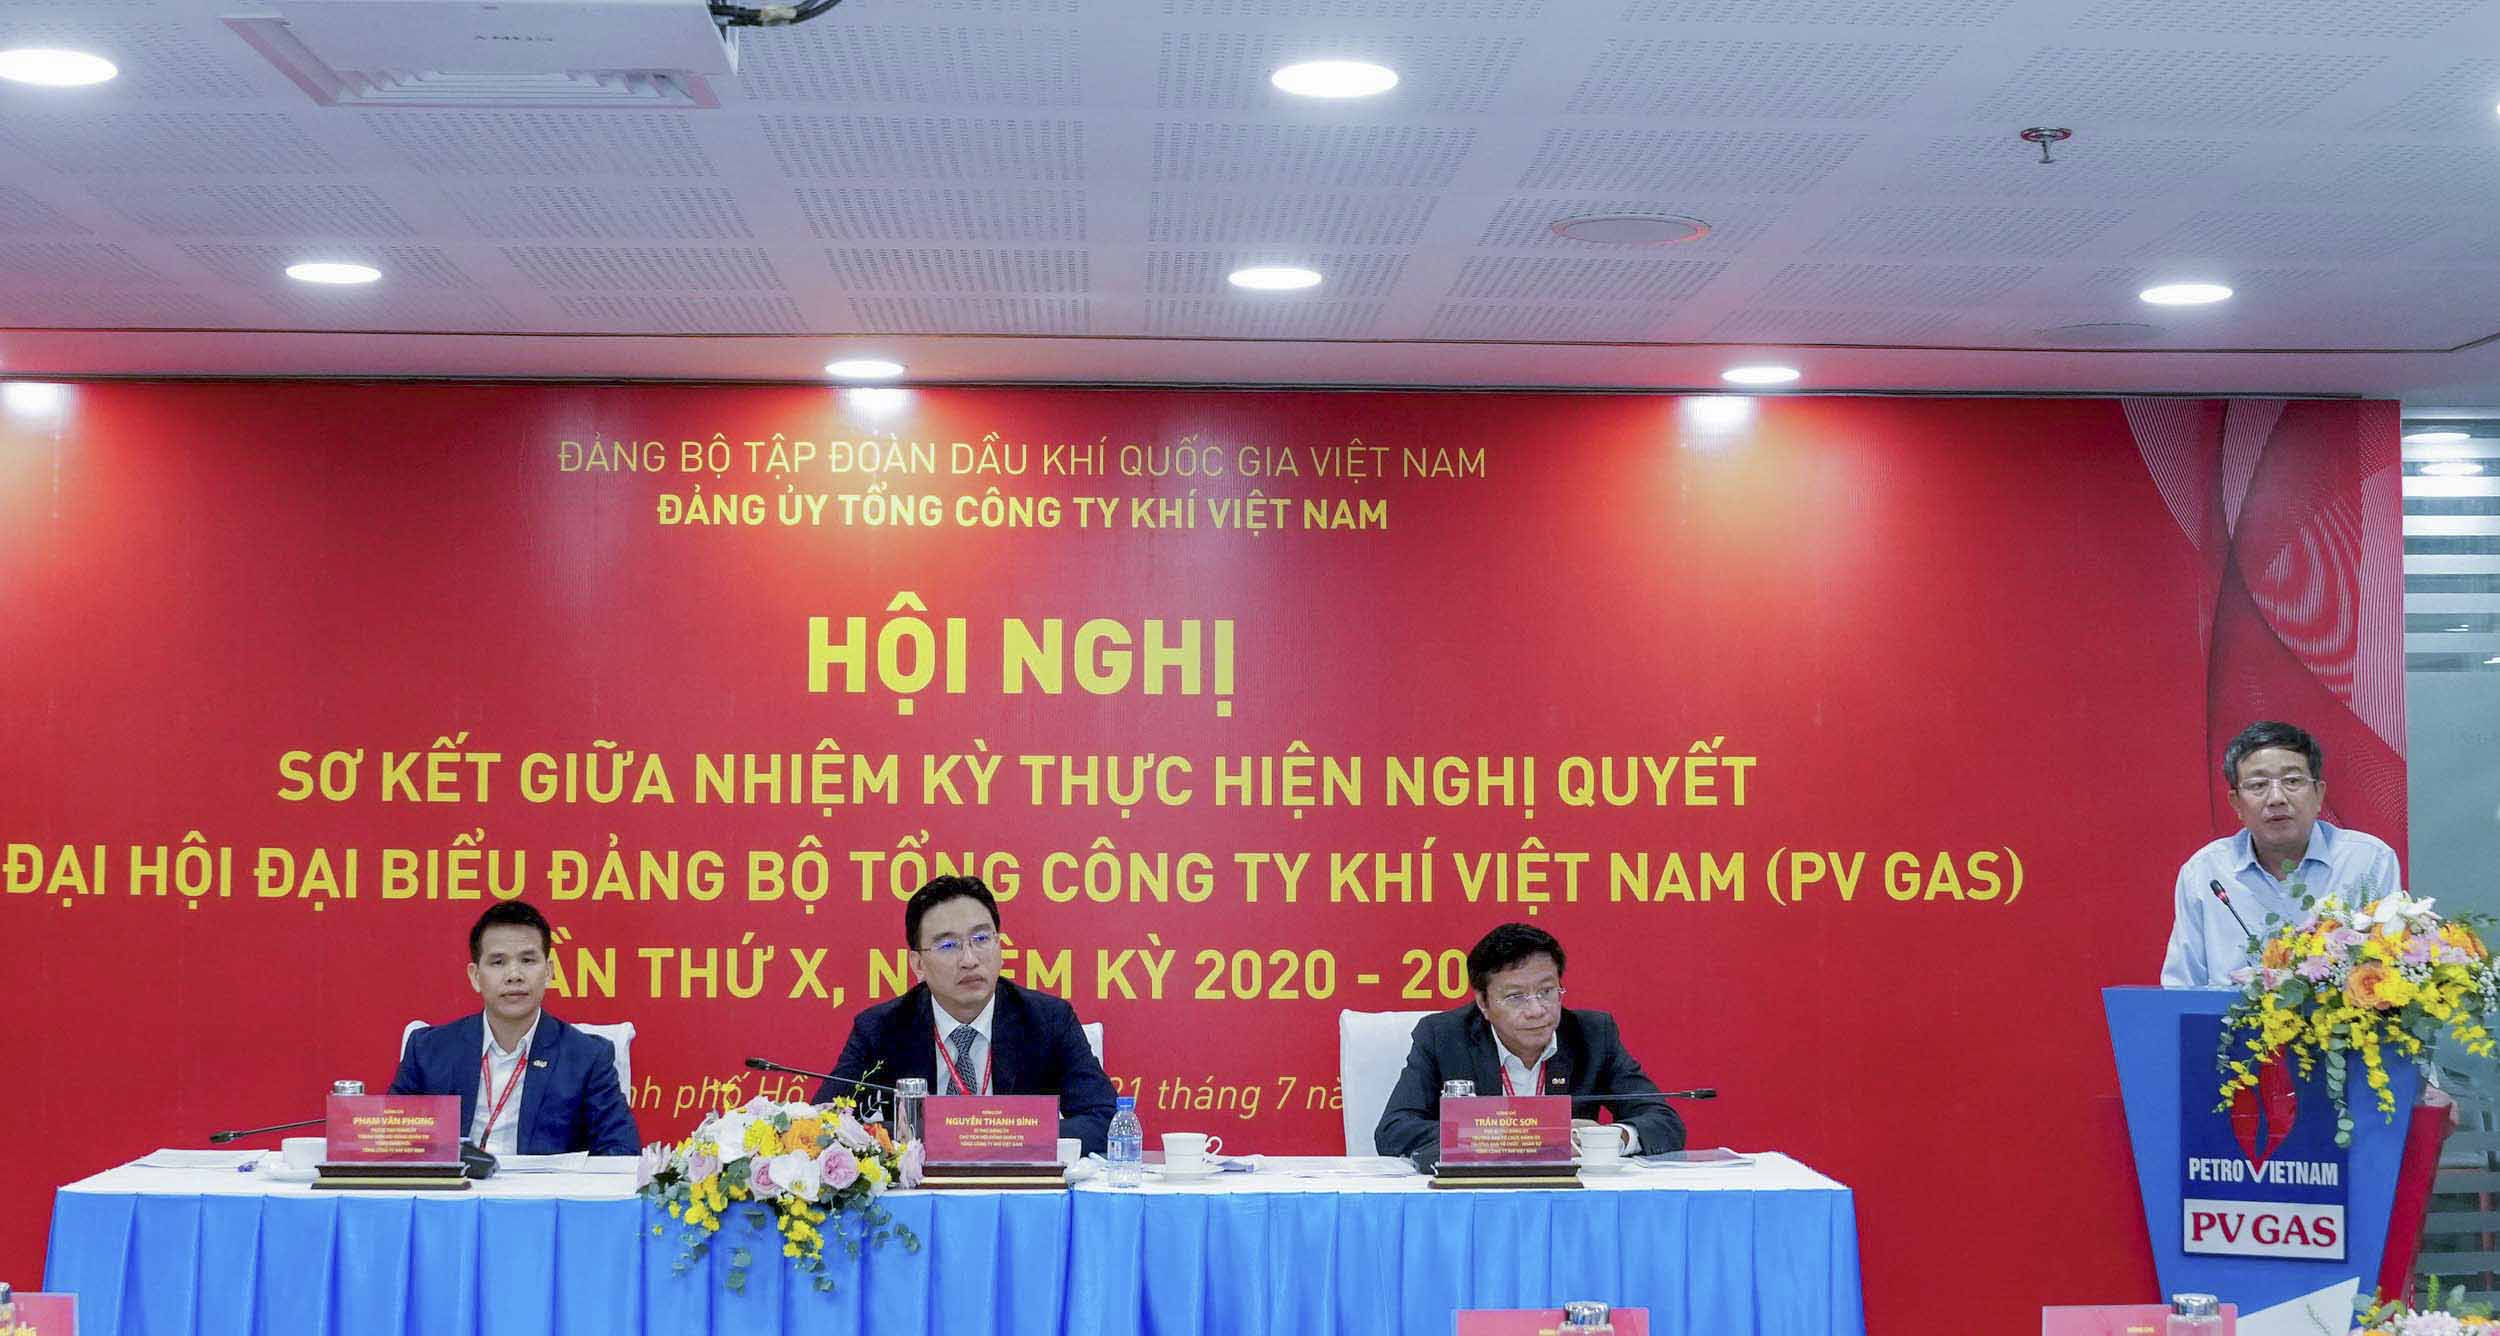 Đảng bộ Tổng công ty Khí Việt Nam phát huy kết quả đạt được giữa nhiệm kỳ